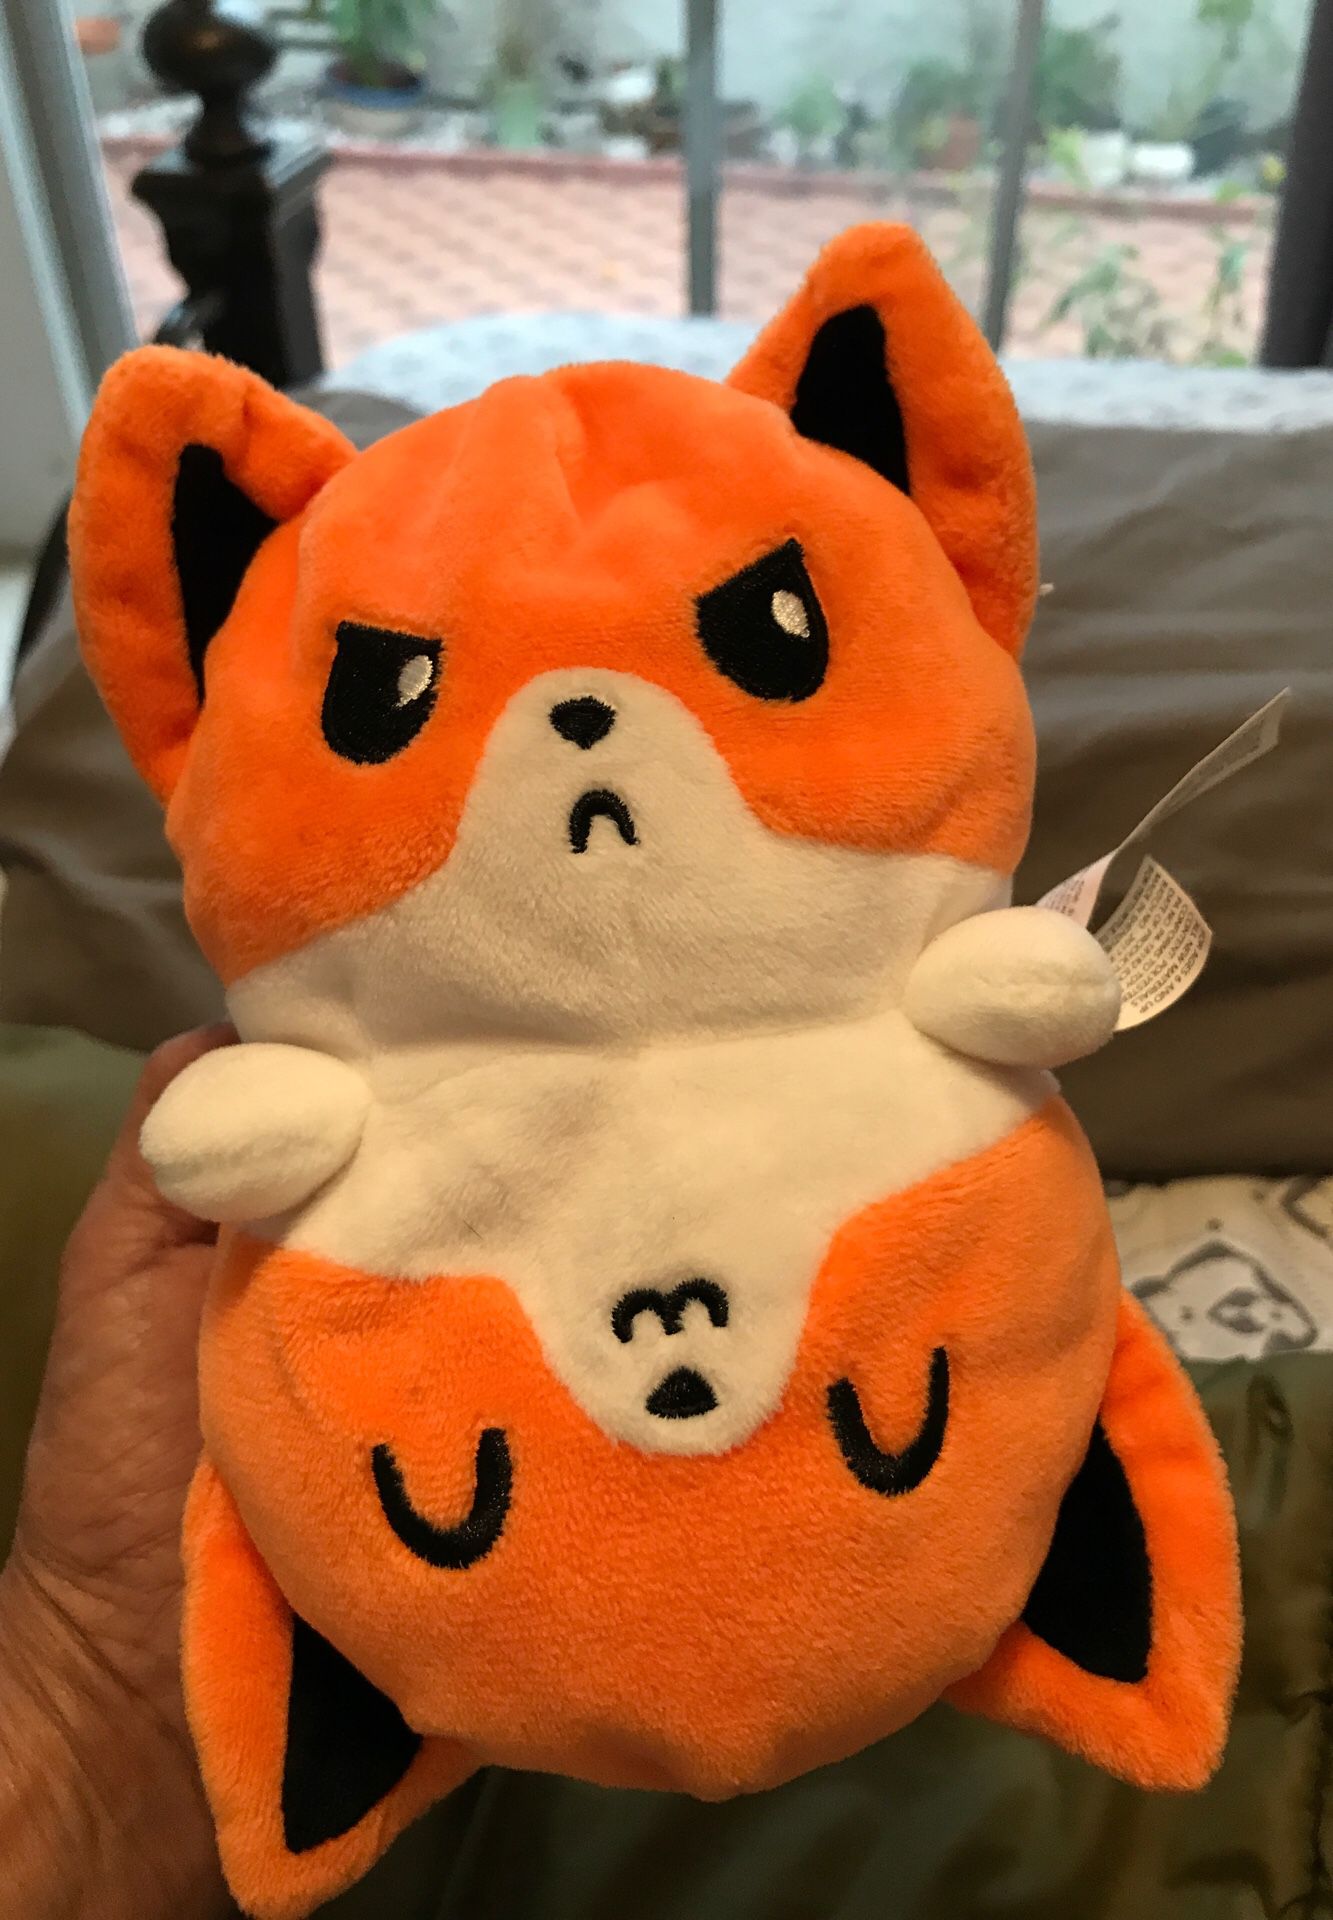 7” Teeturtle fox stuffed animal $4.00